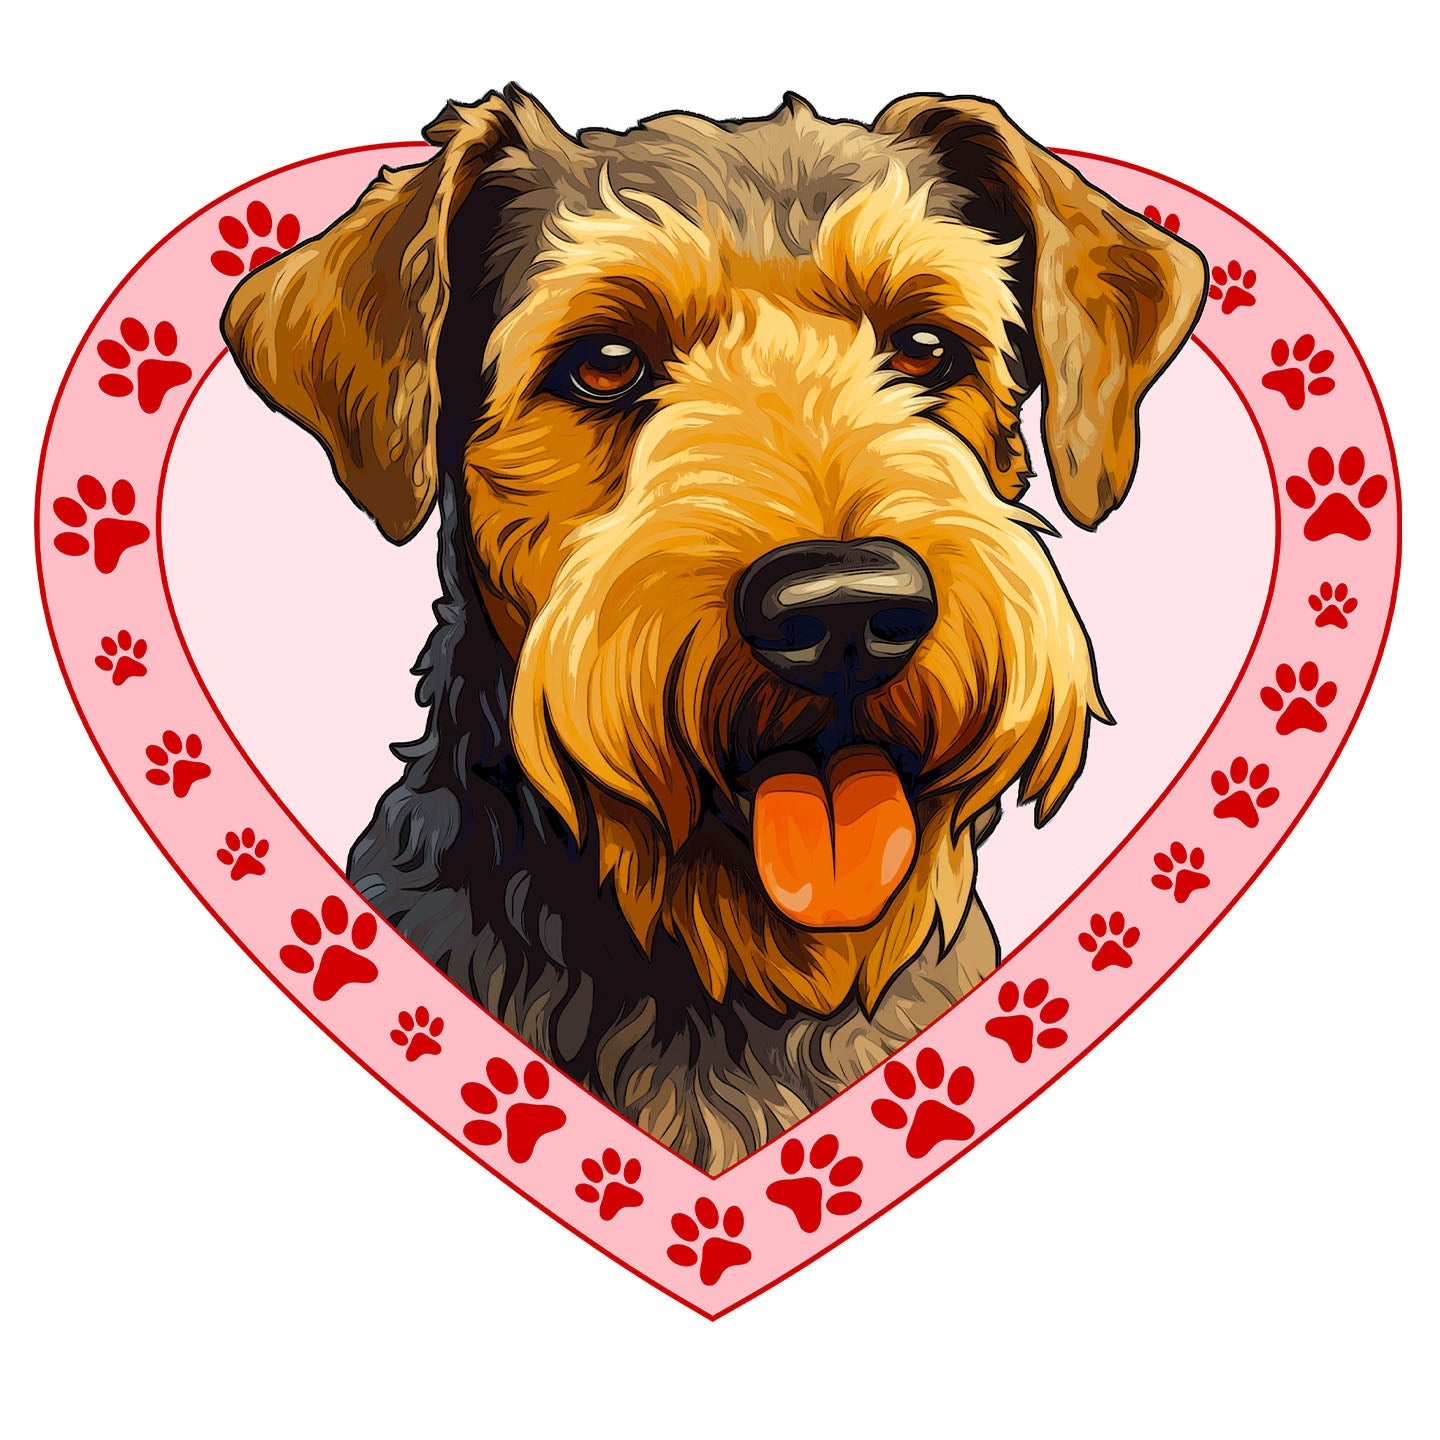 Welsh Terrier Illustration In Heart - Adult Unisex T-Shirt